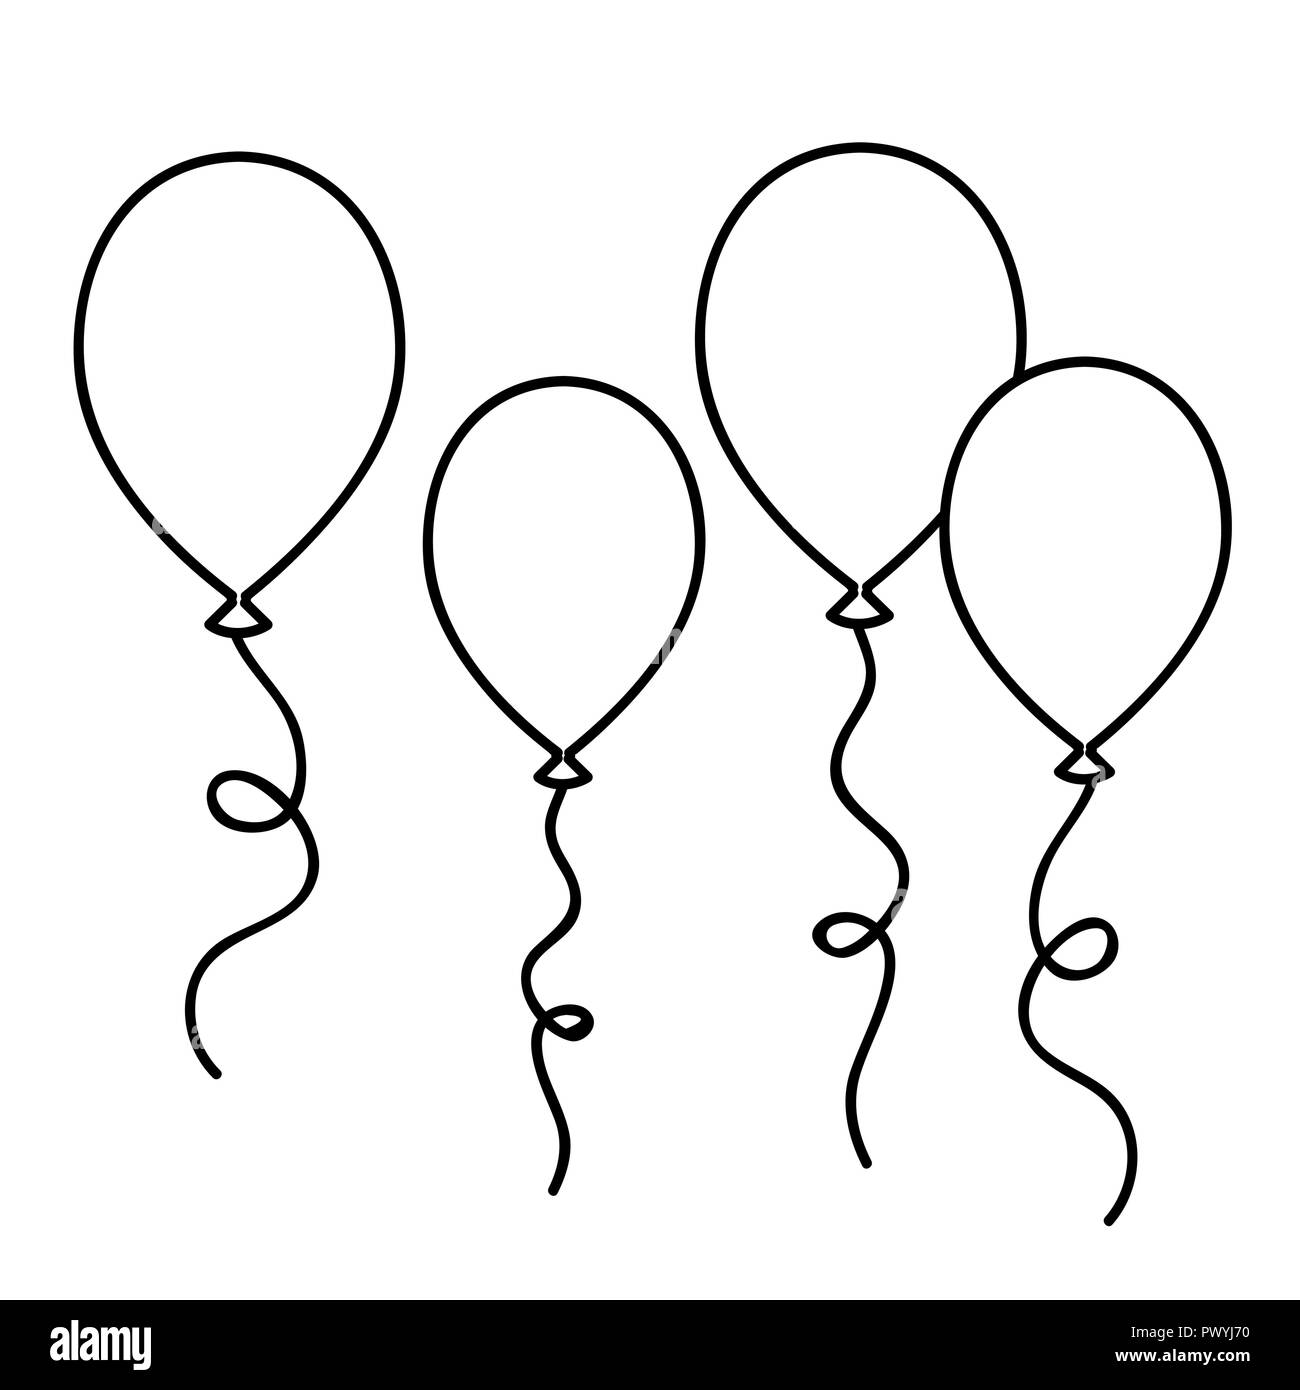 Luftballons einfache Zeichnung skizzieren, Malbuch Vector Illustration  Stock-Vektorgrafik - Alamy